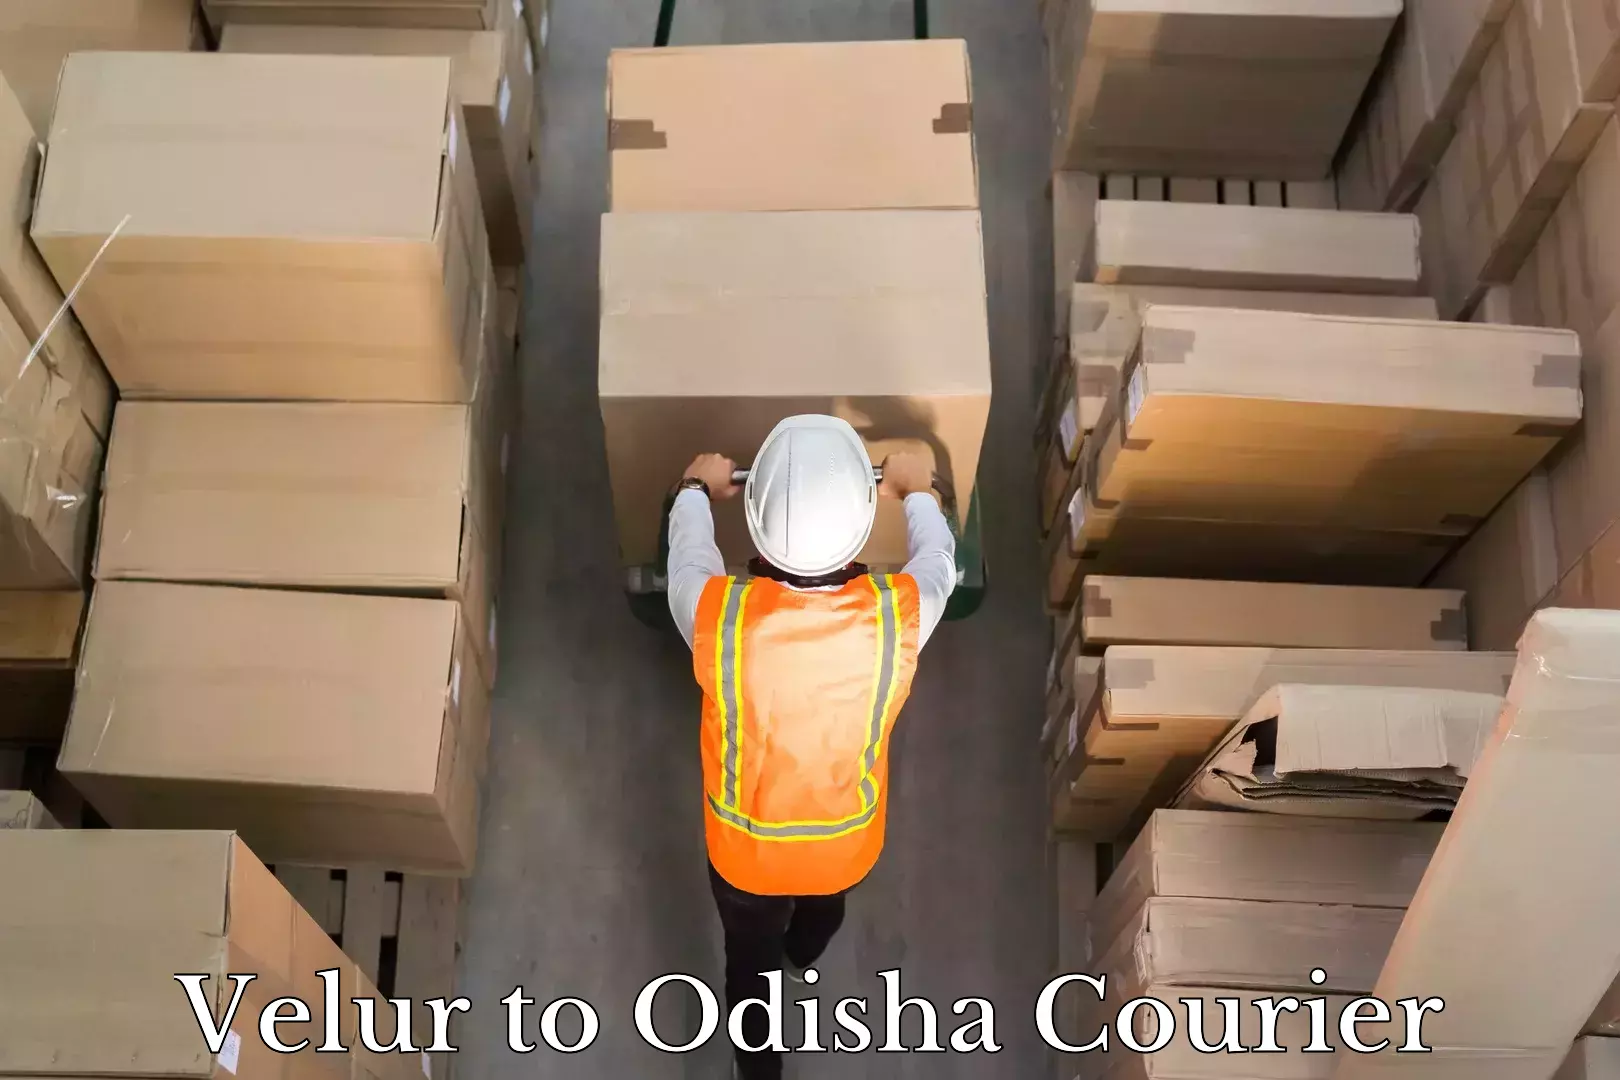 Customer-centric shipping Velur to Odisha